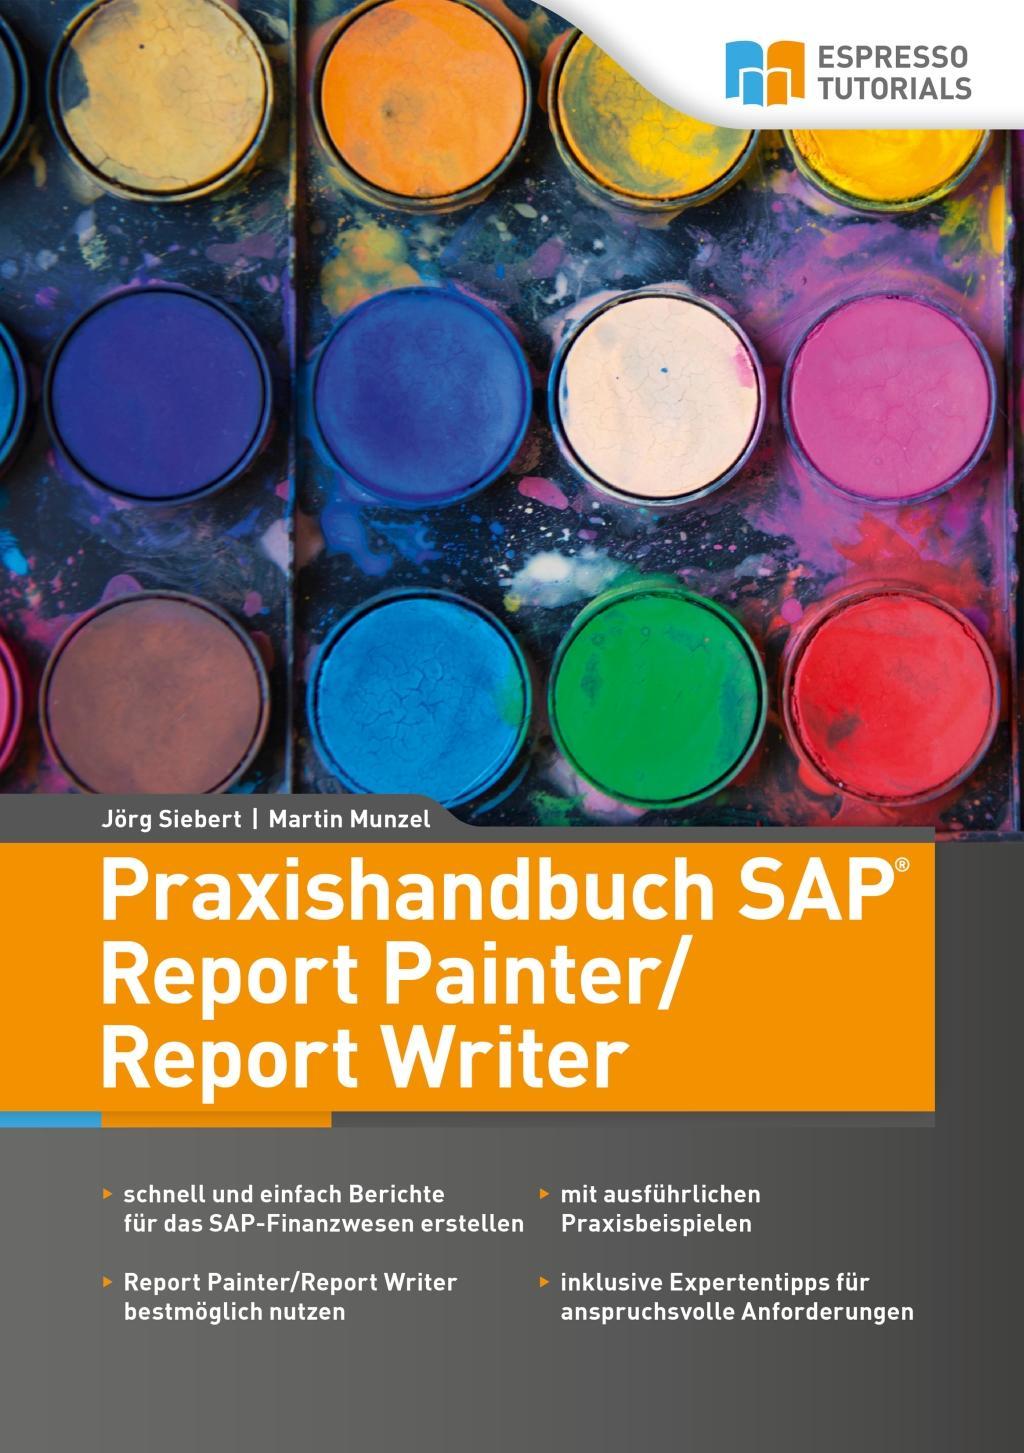 Carte Praxishandbuch SAP Report Painter/Report Writer Martin Munzel